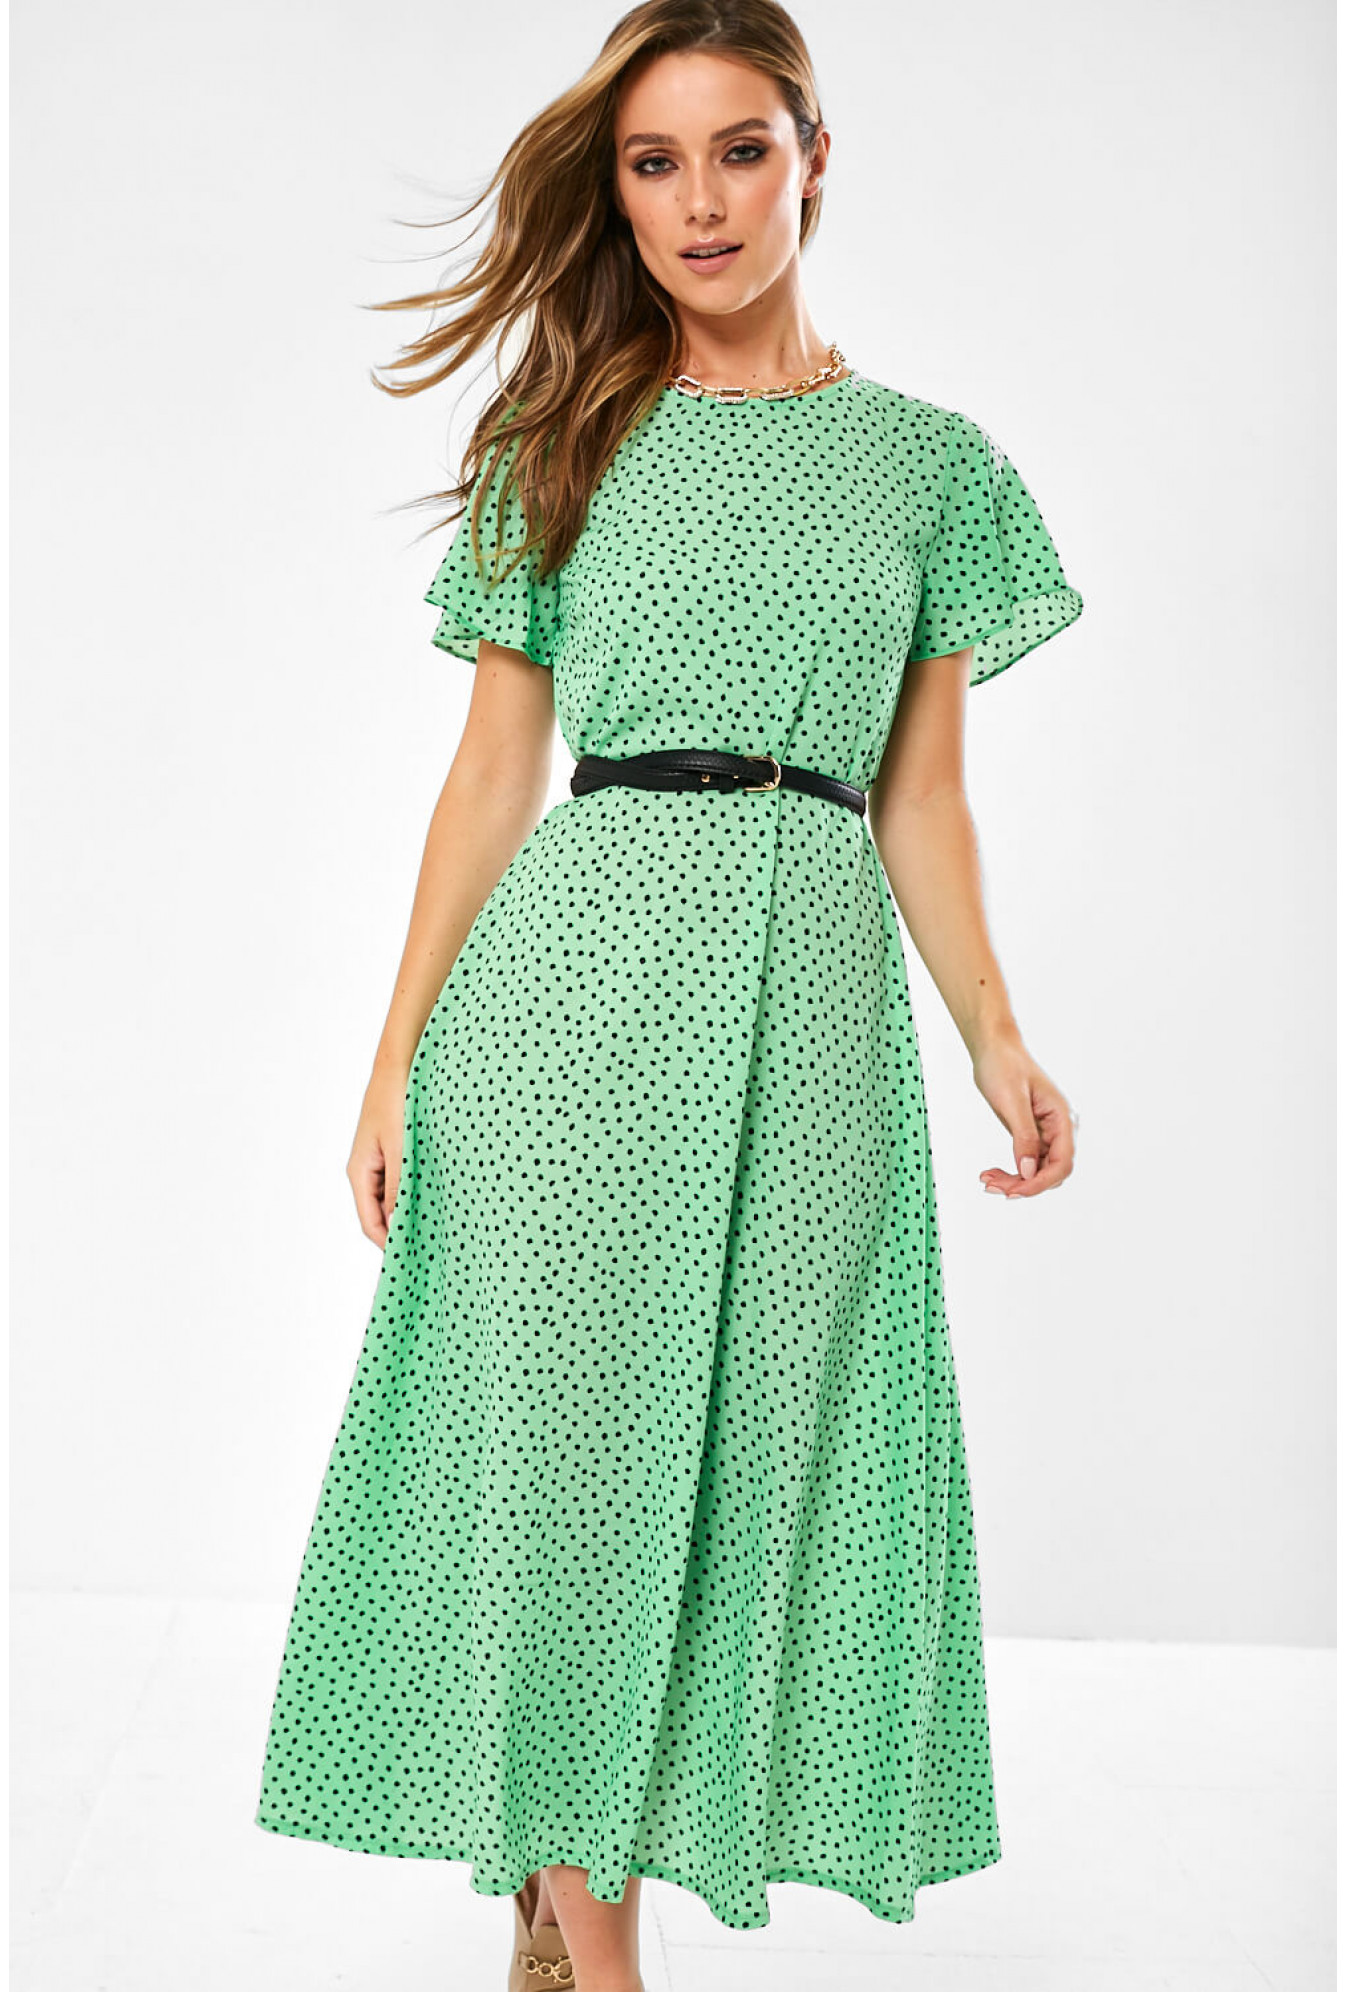 zara green summer dress